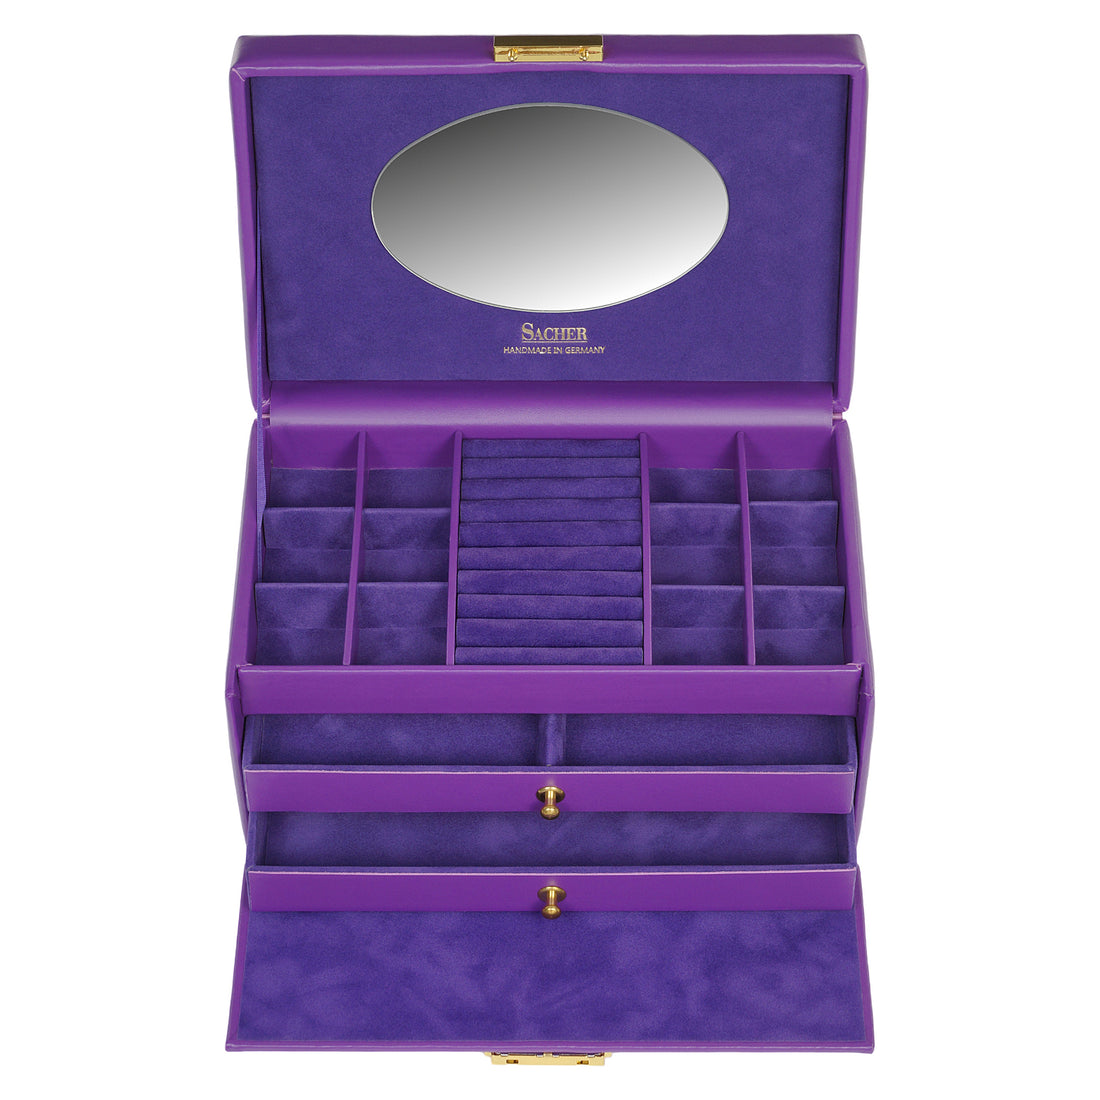 Caixa para jóias Emma colisimo / violeta (pele de vaca)